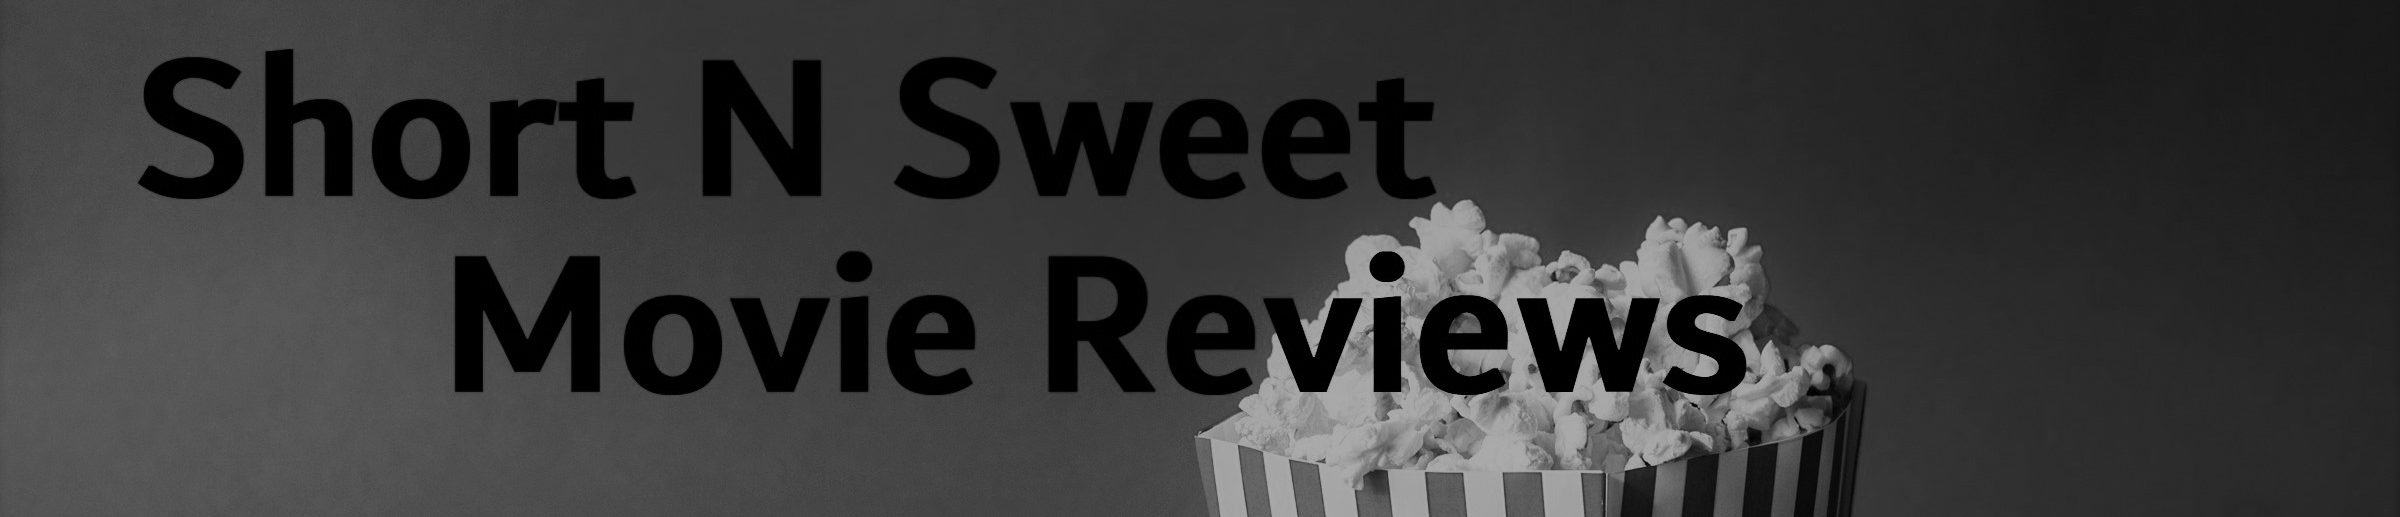 Short N Sweet Movie Reviews